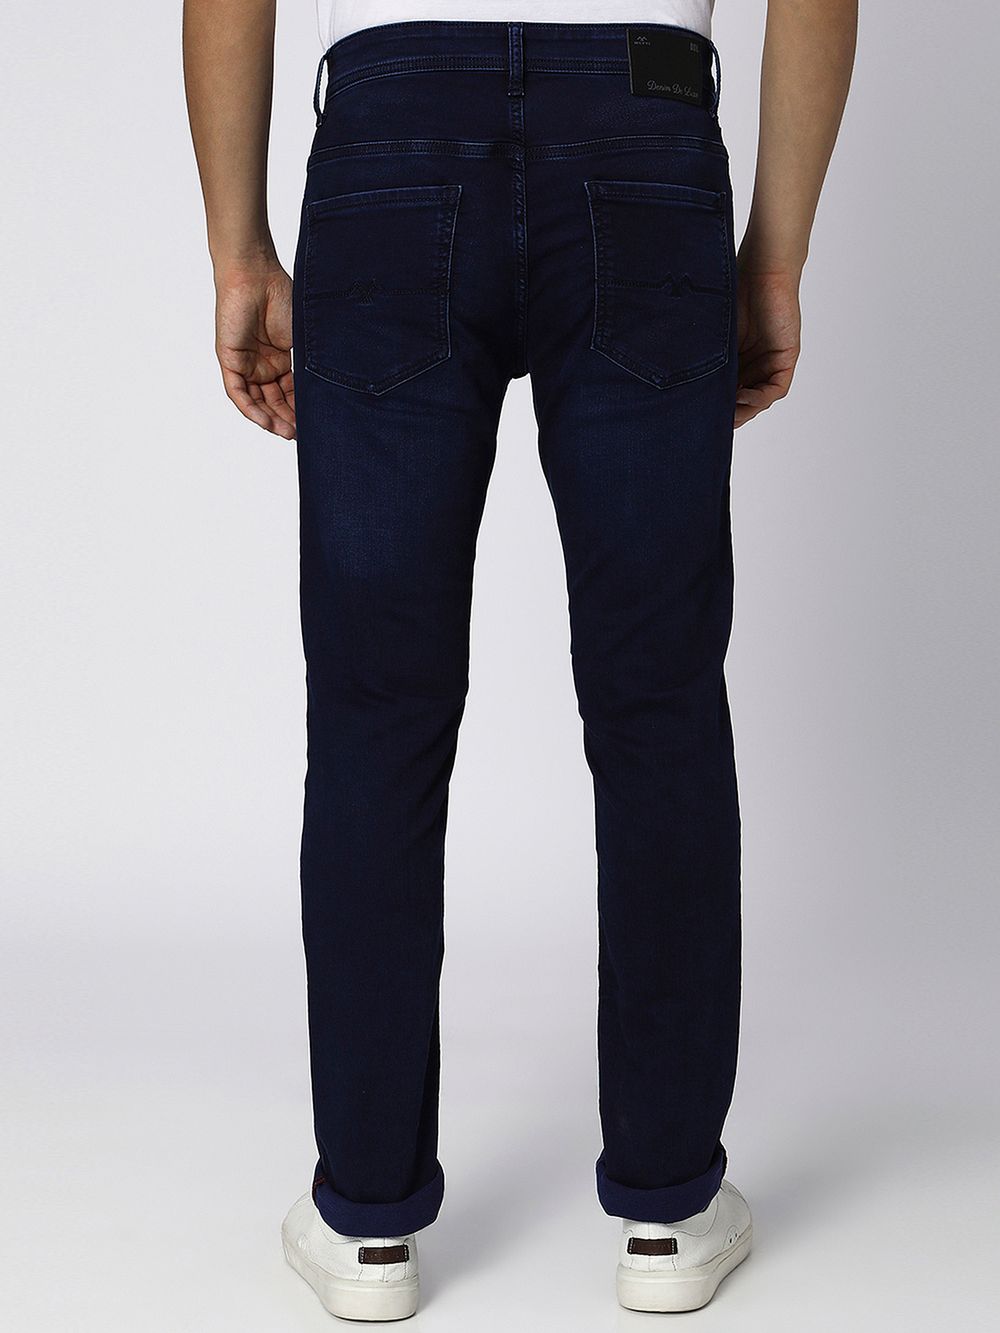 Dark Indigo Blue Narrow Fit Denim Deluxe Stretch Jeans